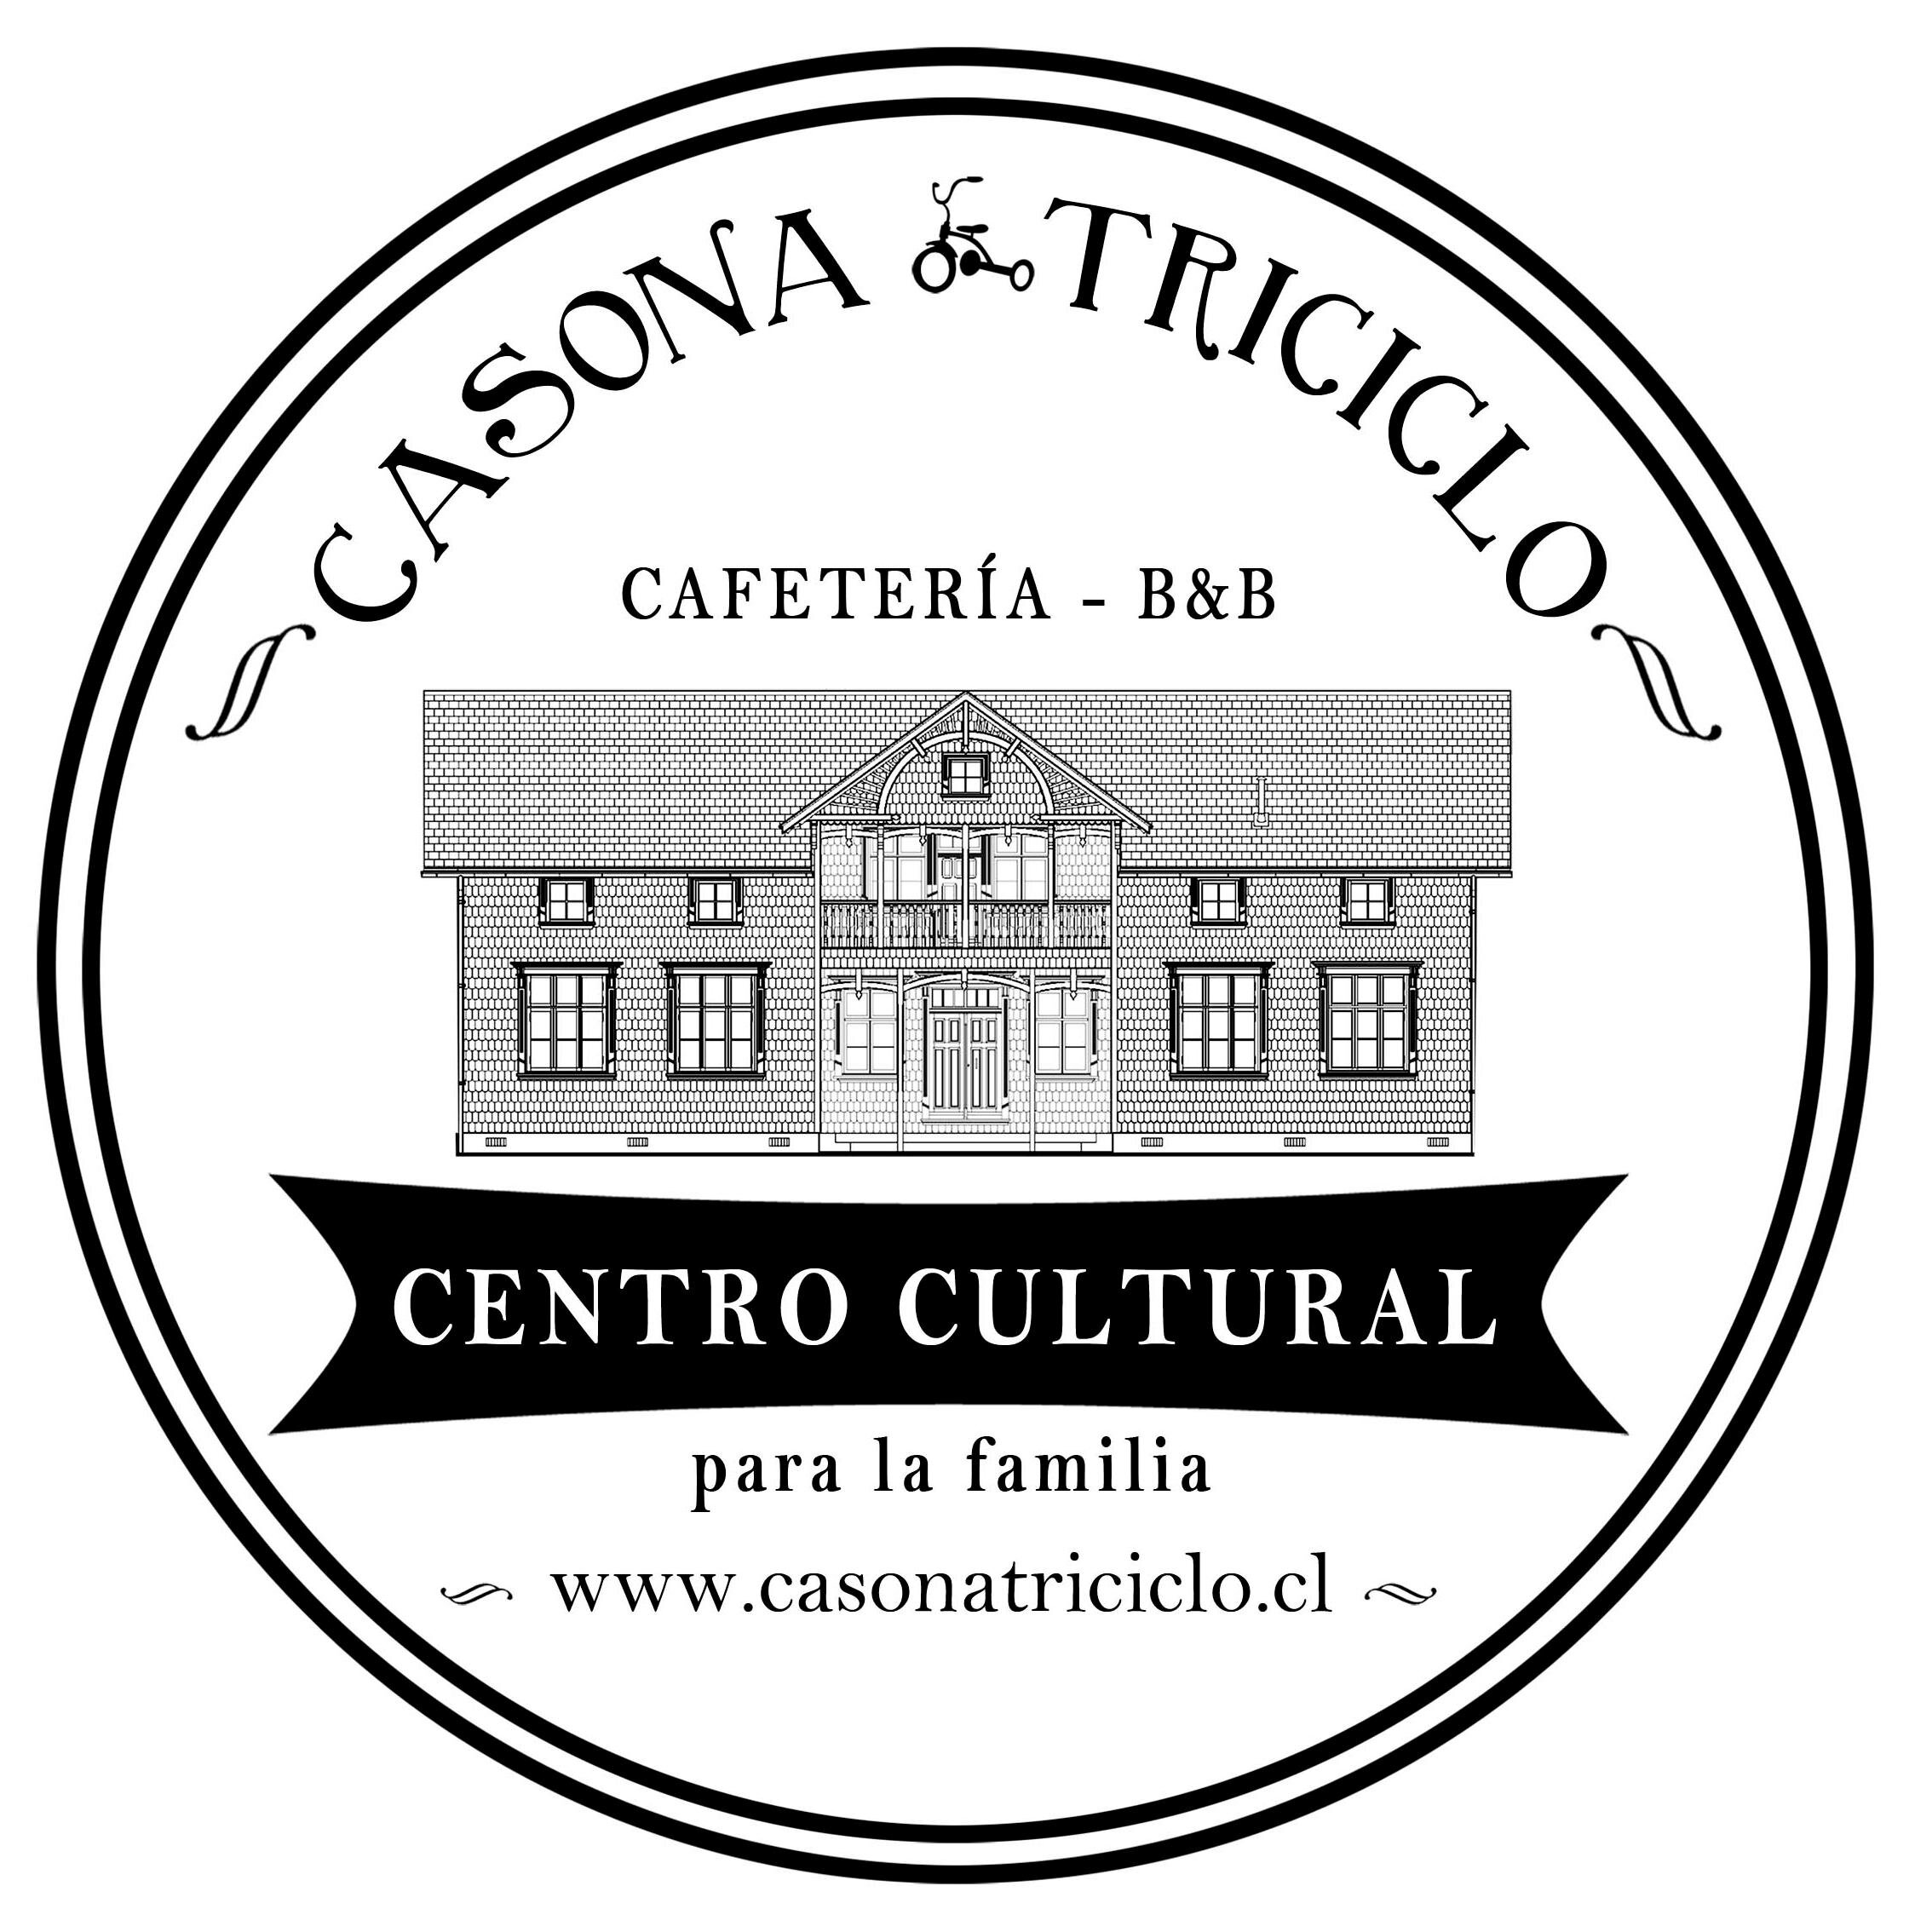 Centro Cultural para la Familia, Cafetería con sala de juegos y Bed & Breakfast